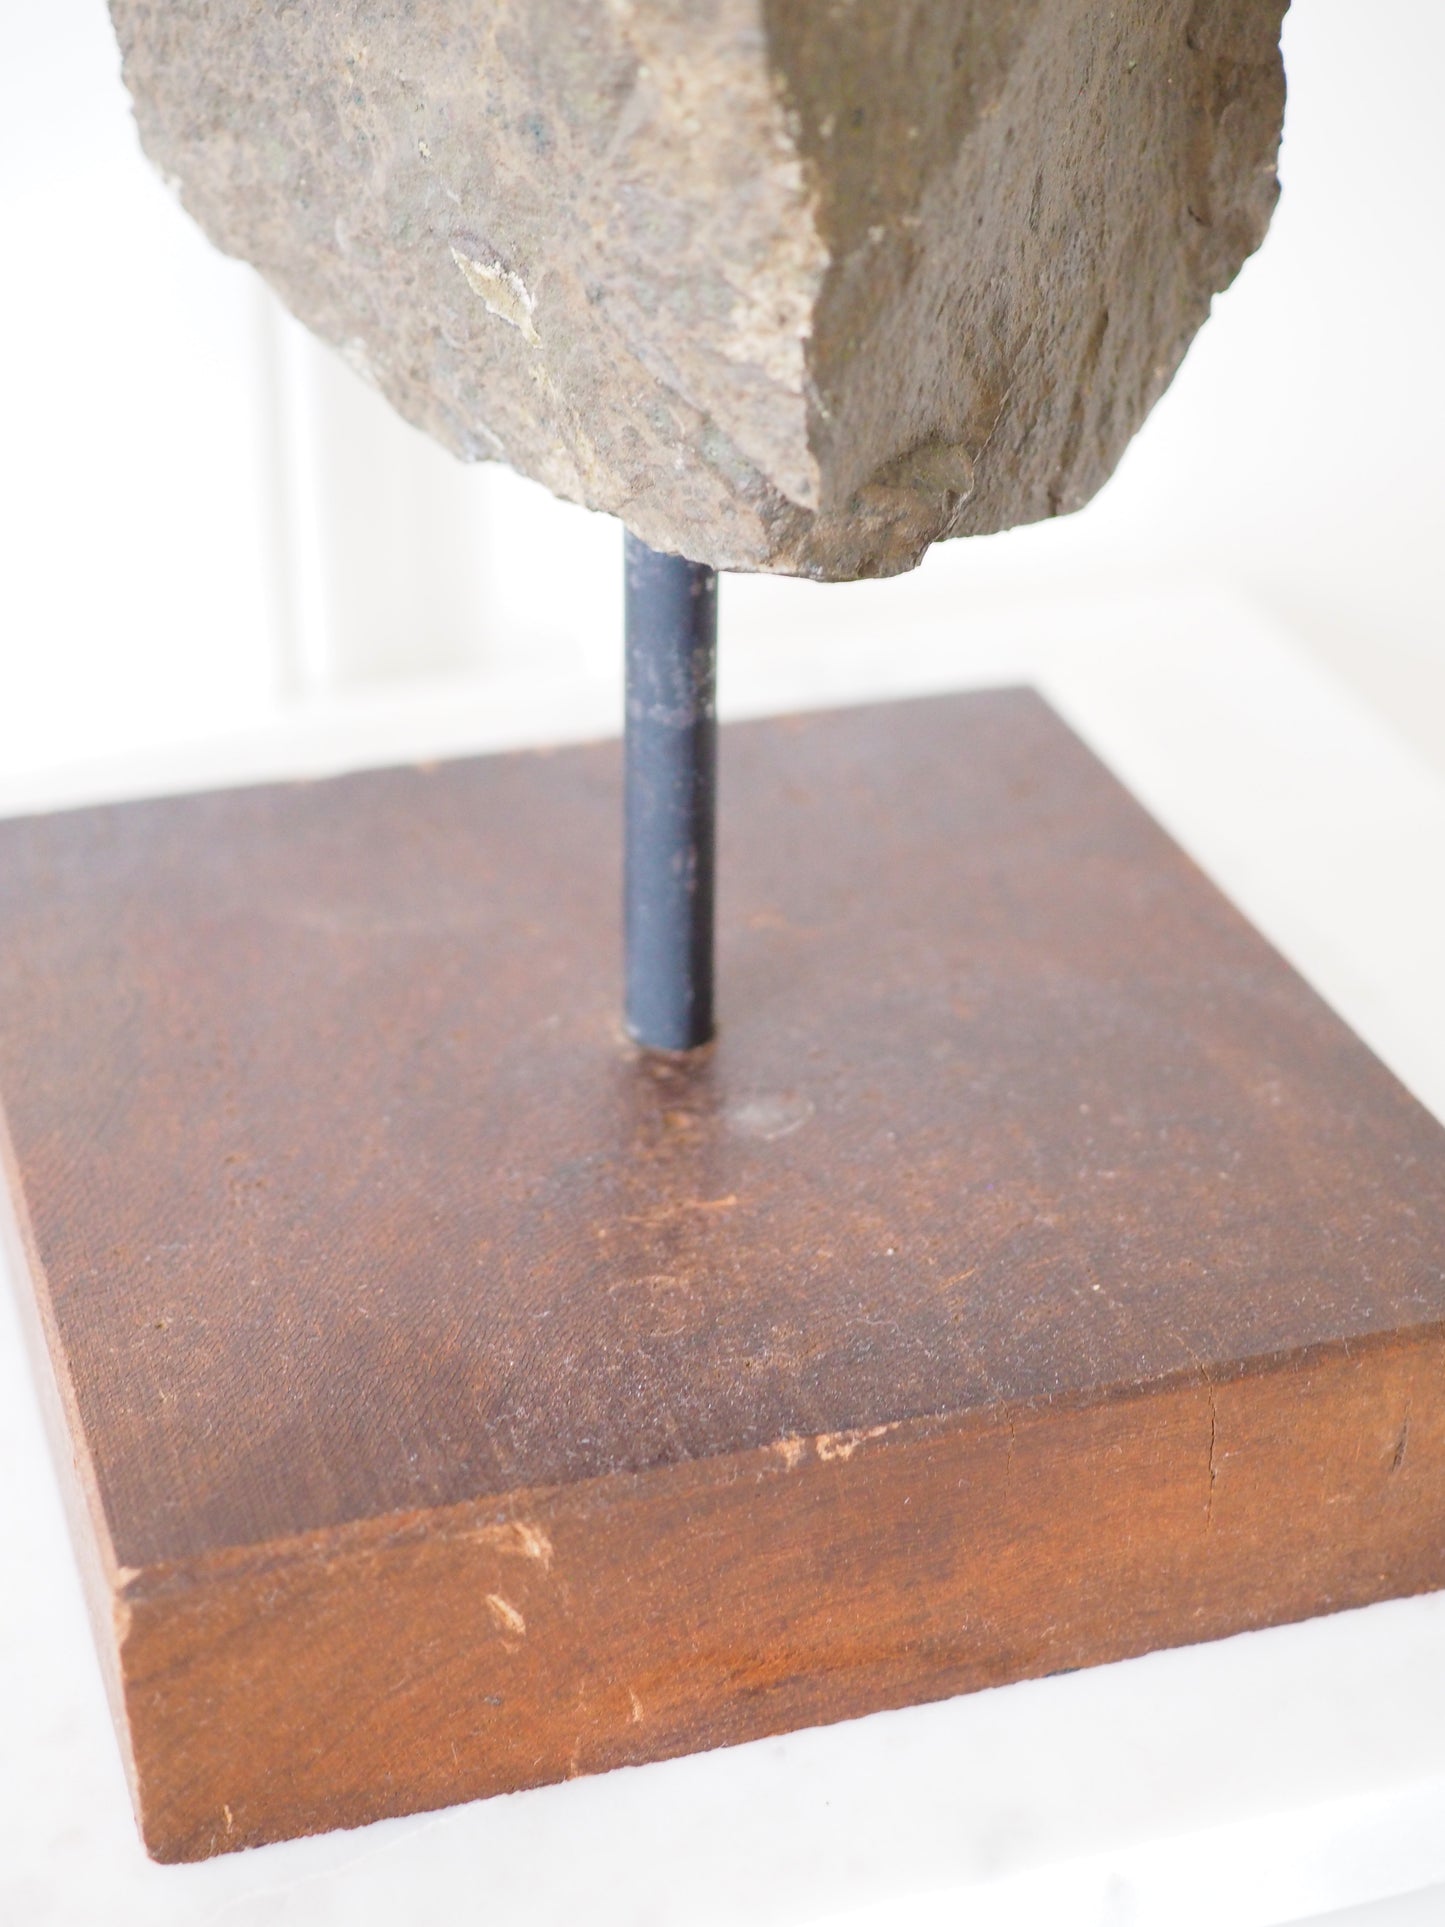 Amethyst in Basalt auf Ständer - Amethyst in Basalt on Stand ca 4.6Kg 30 cm - aus Brasilien